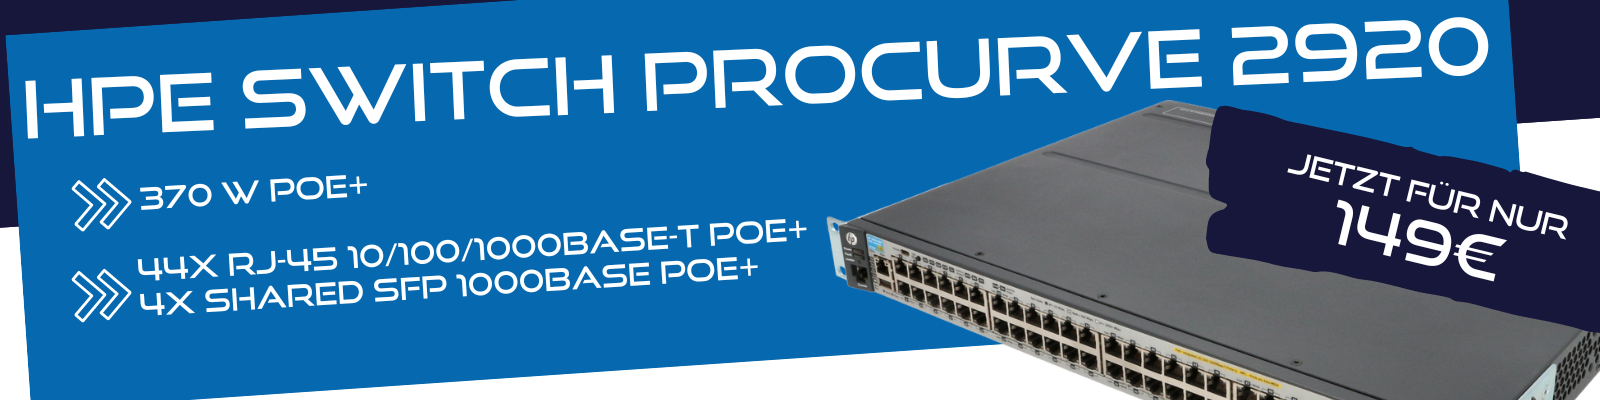 HPE Switch Procurve 2920